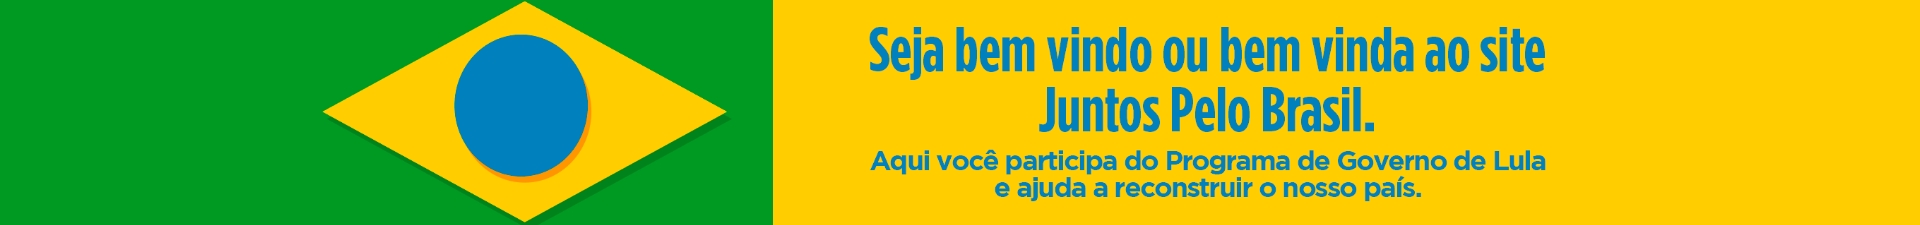 Seja bem vindo ou bem vinda ao site Juntos Pelo Brasil.